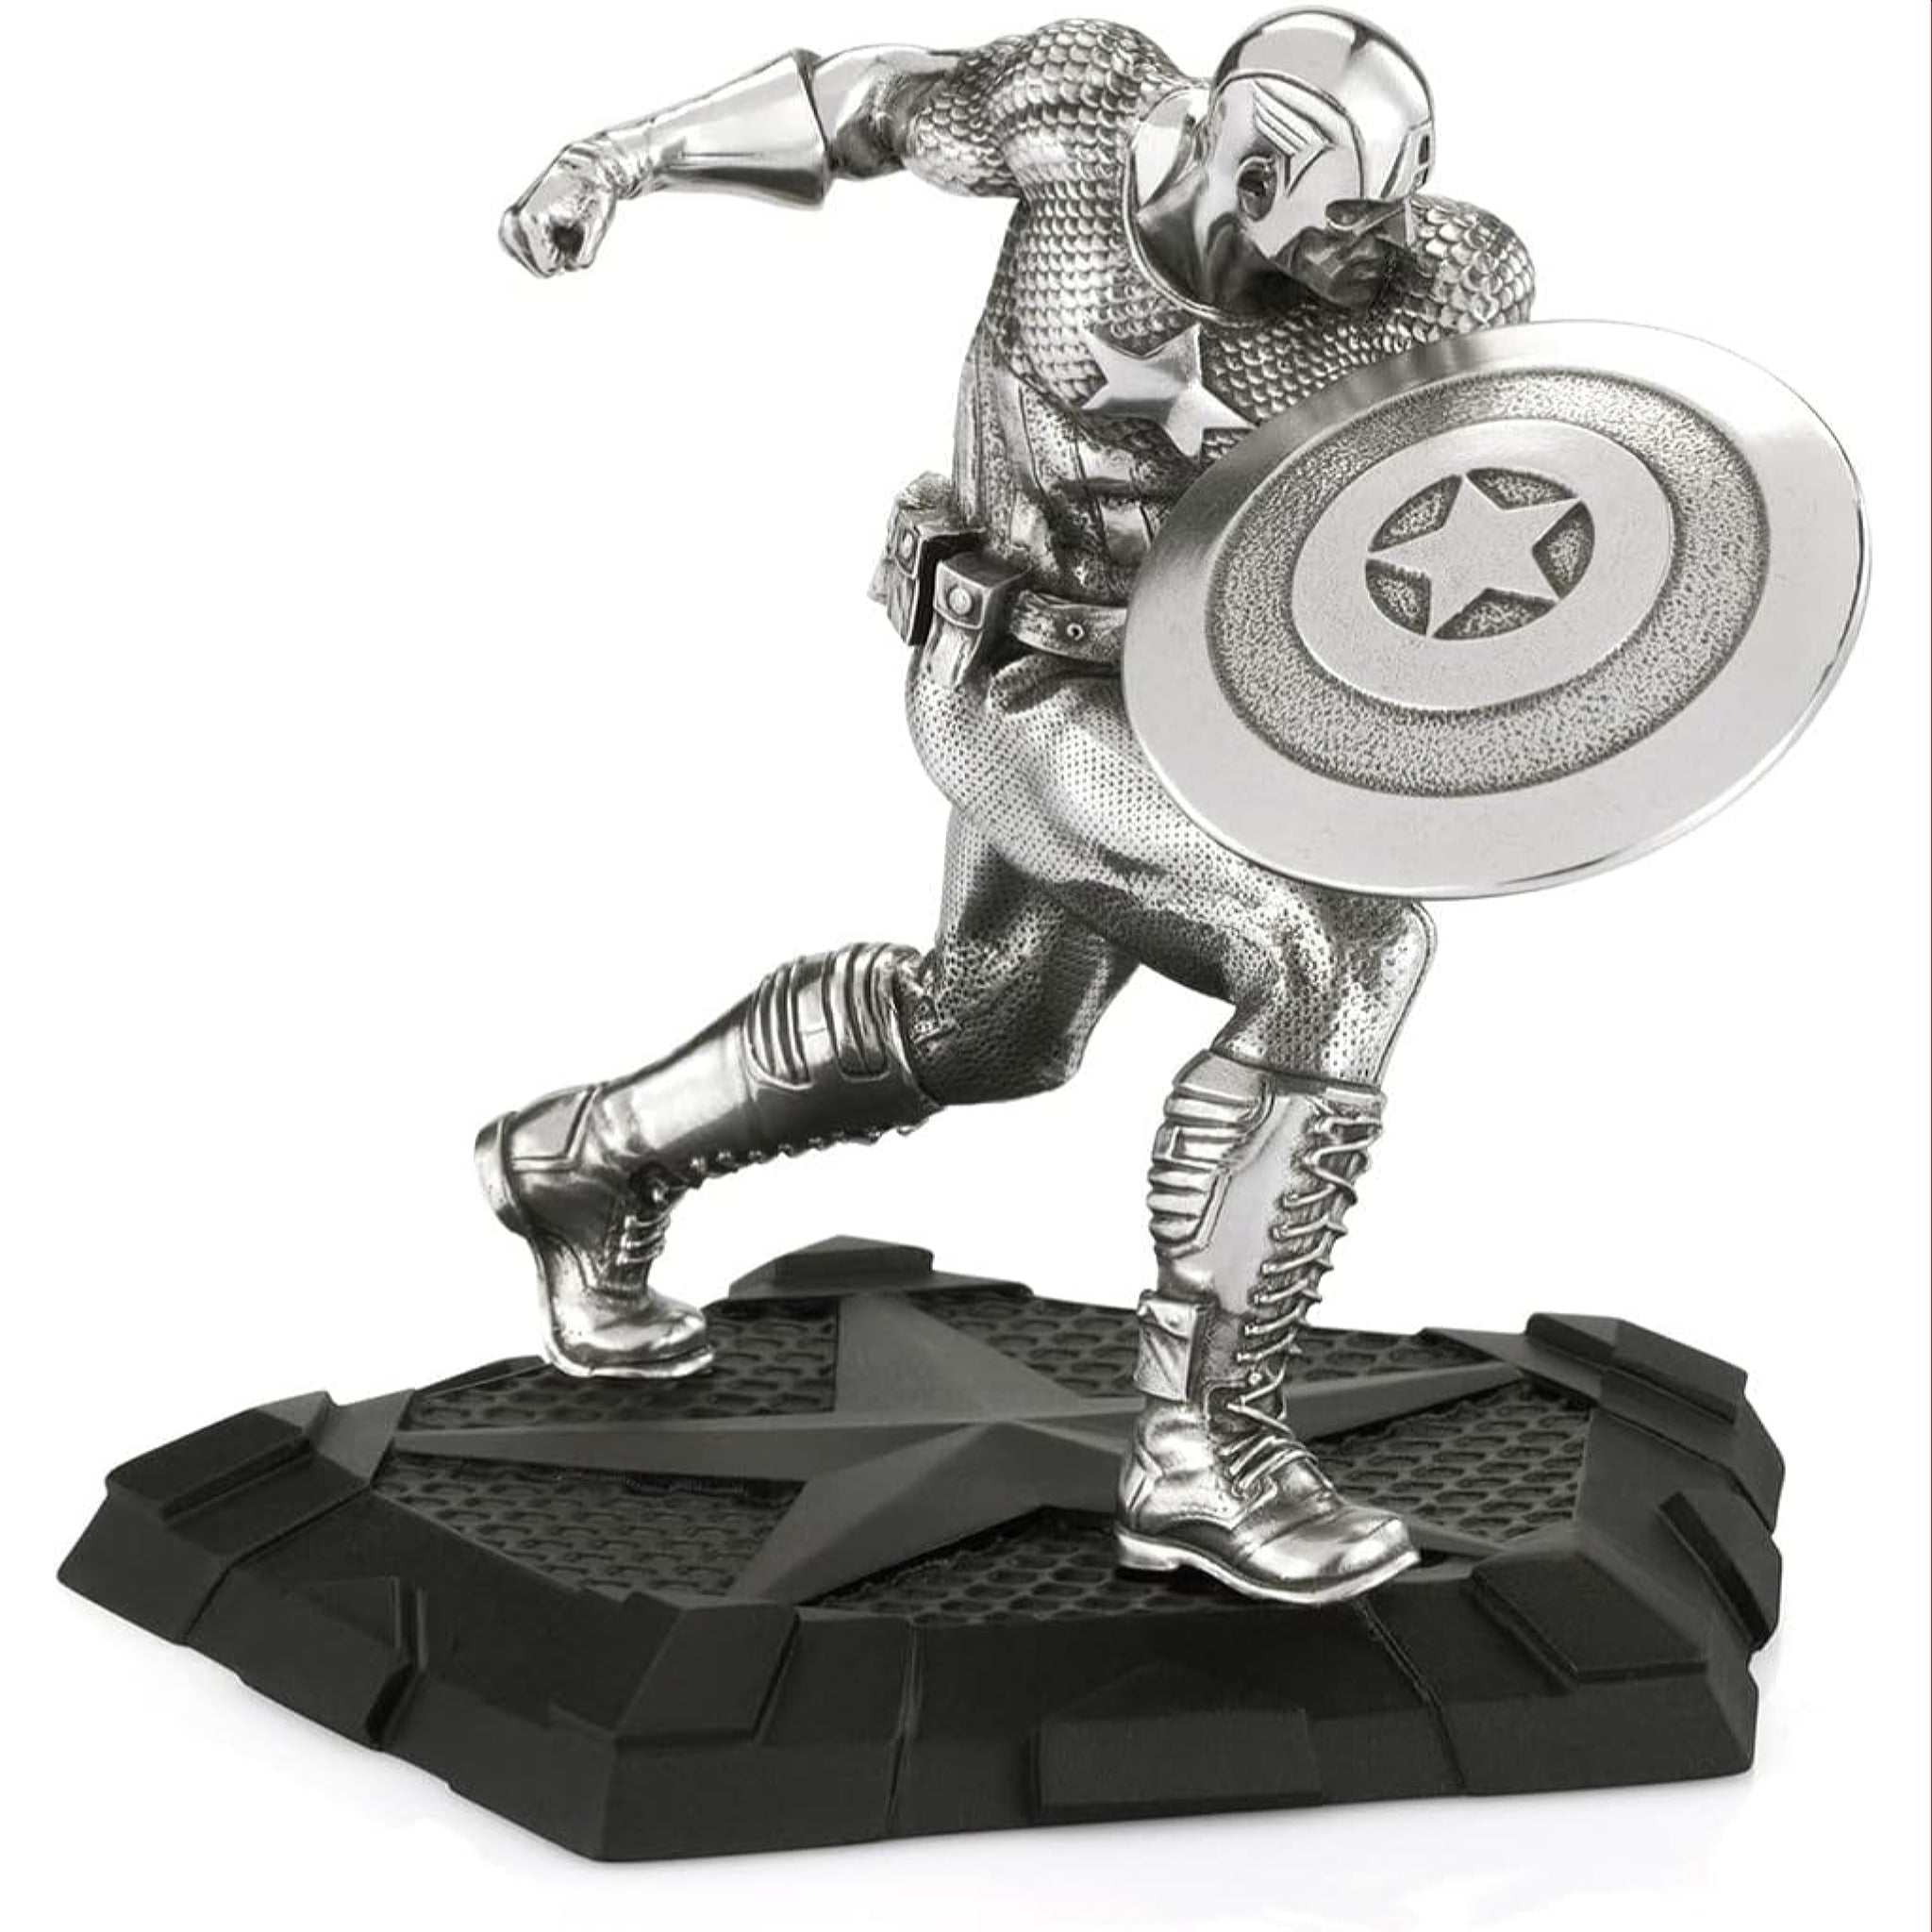 Marvel Royal Selangor Captain America First Avenger Figurine